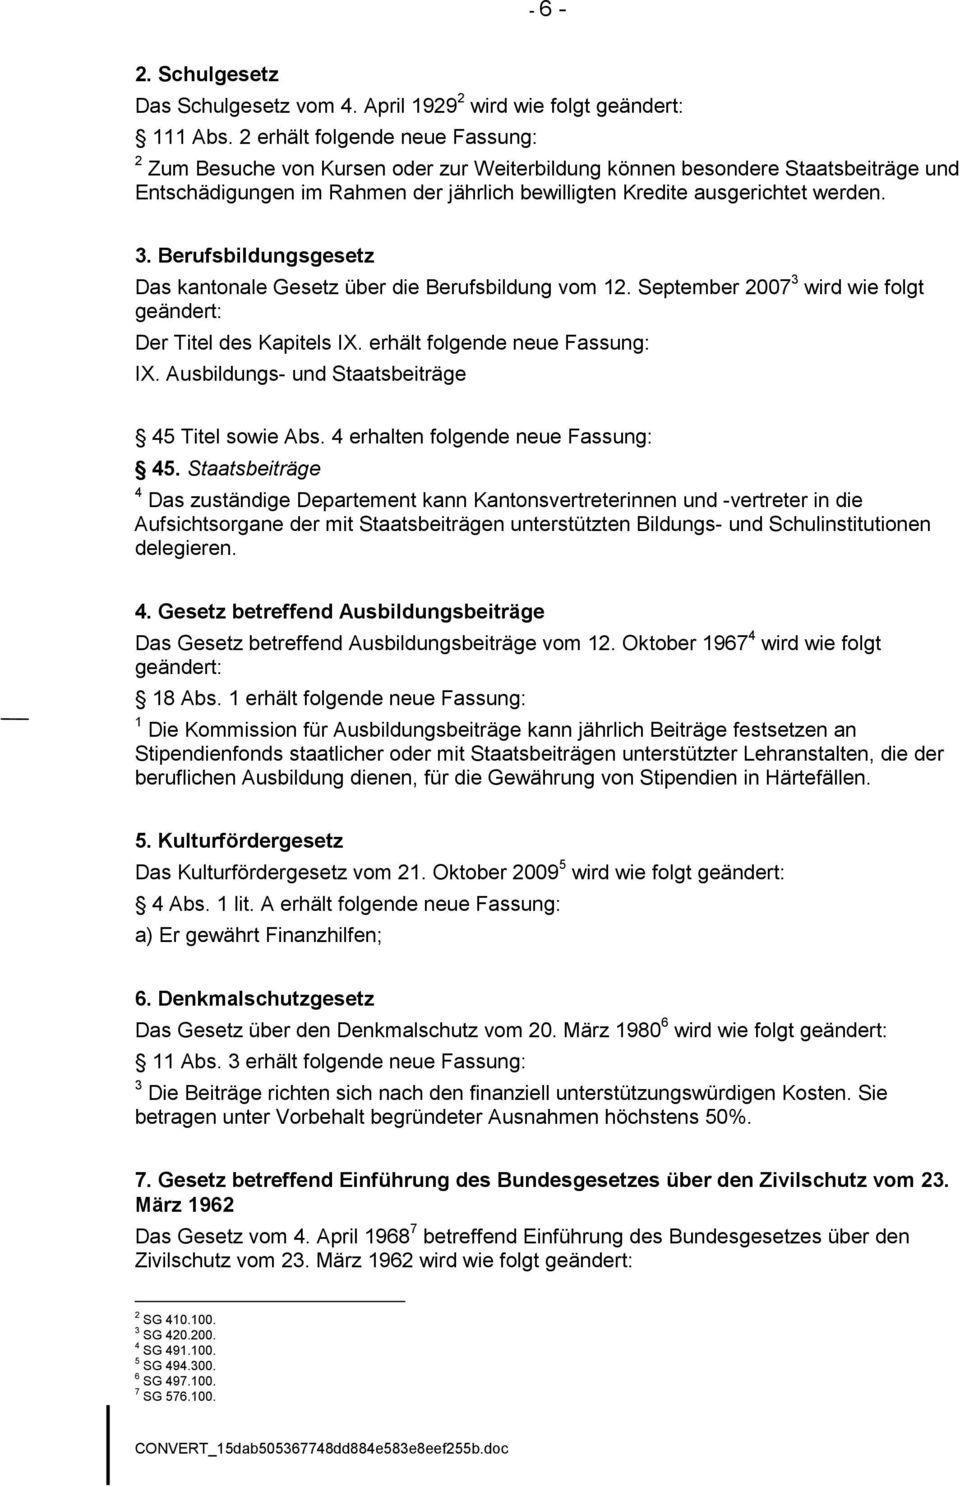 Berufsbildungsgesetz Das kantonale Gesetz über die Berufsbildung vom 12. September 2007 3 wird wie folgt geändert: Der Titel des Kapitels IX. erhält folgende neue Fassung: IX.